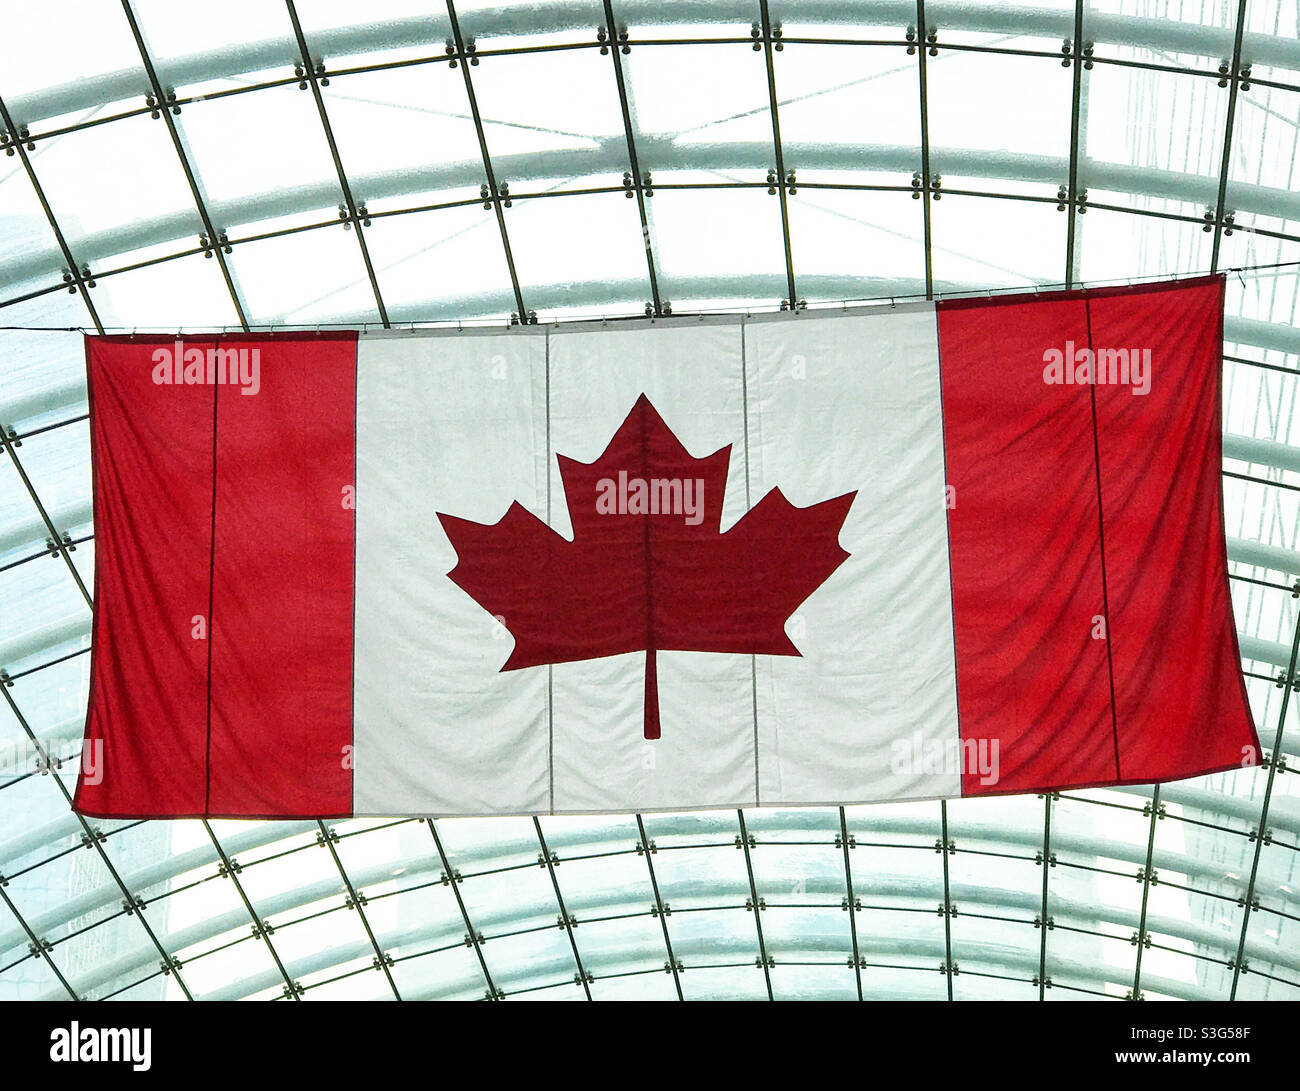 Die rot-weiße kanadische Ahornblattflagge, die an der Glasdecke eines Gebäudes hängt. Stockfoto